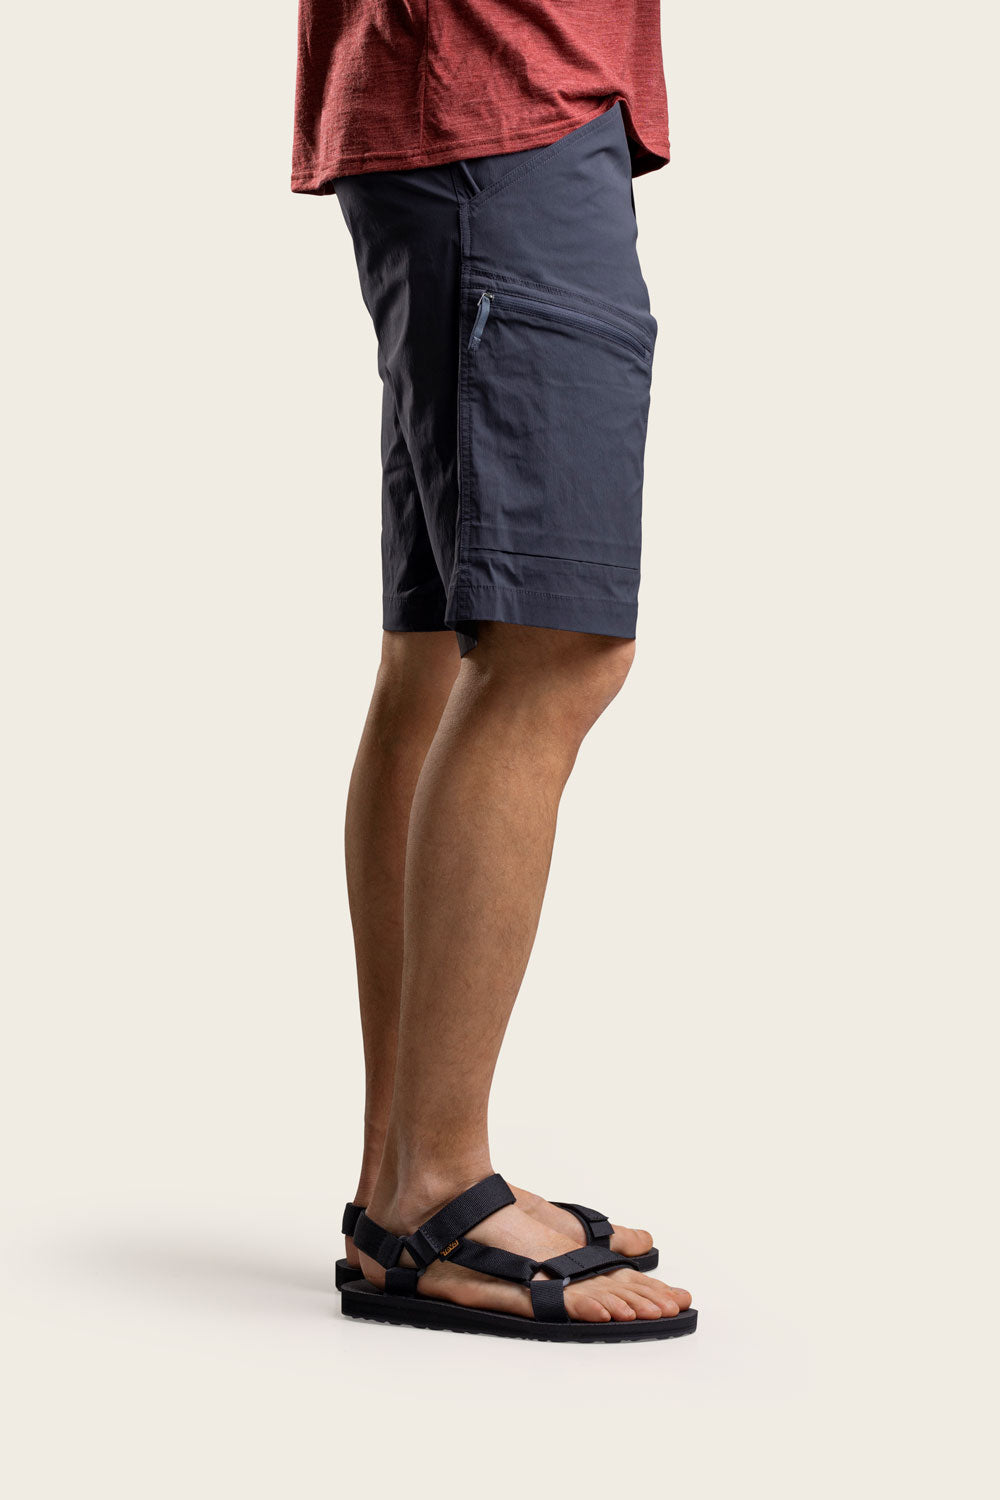 Lind Outdoor Shorts Men's